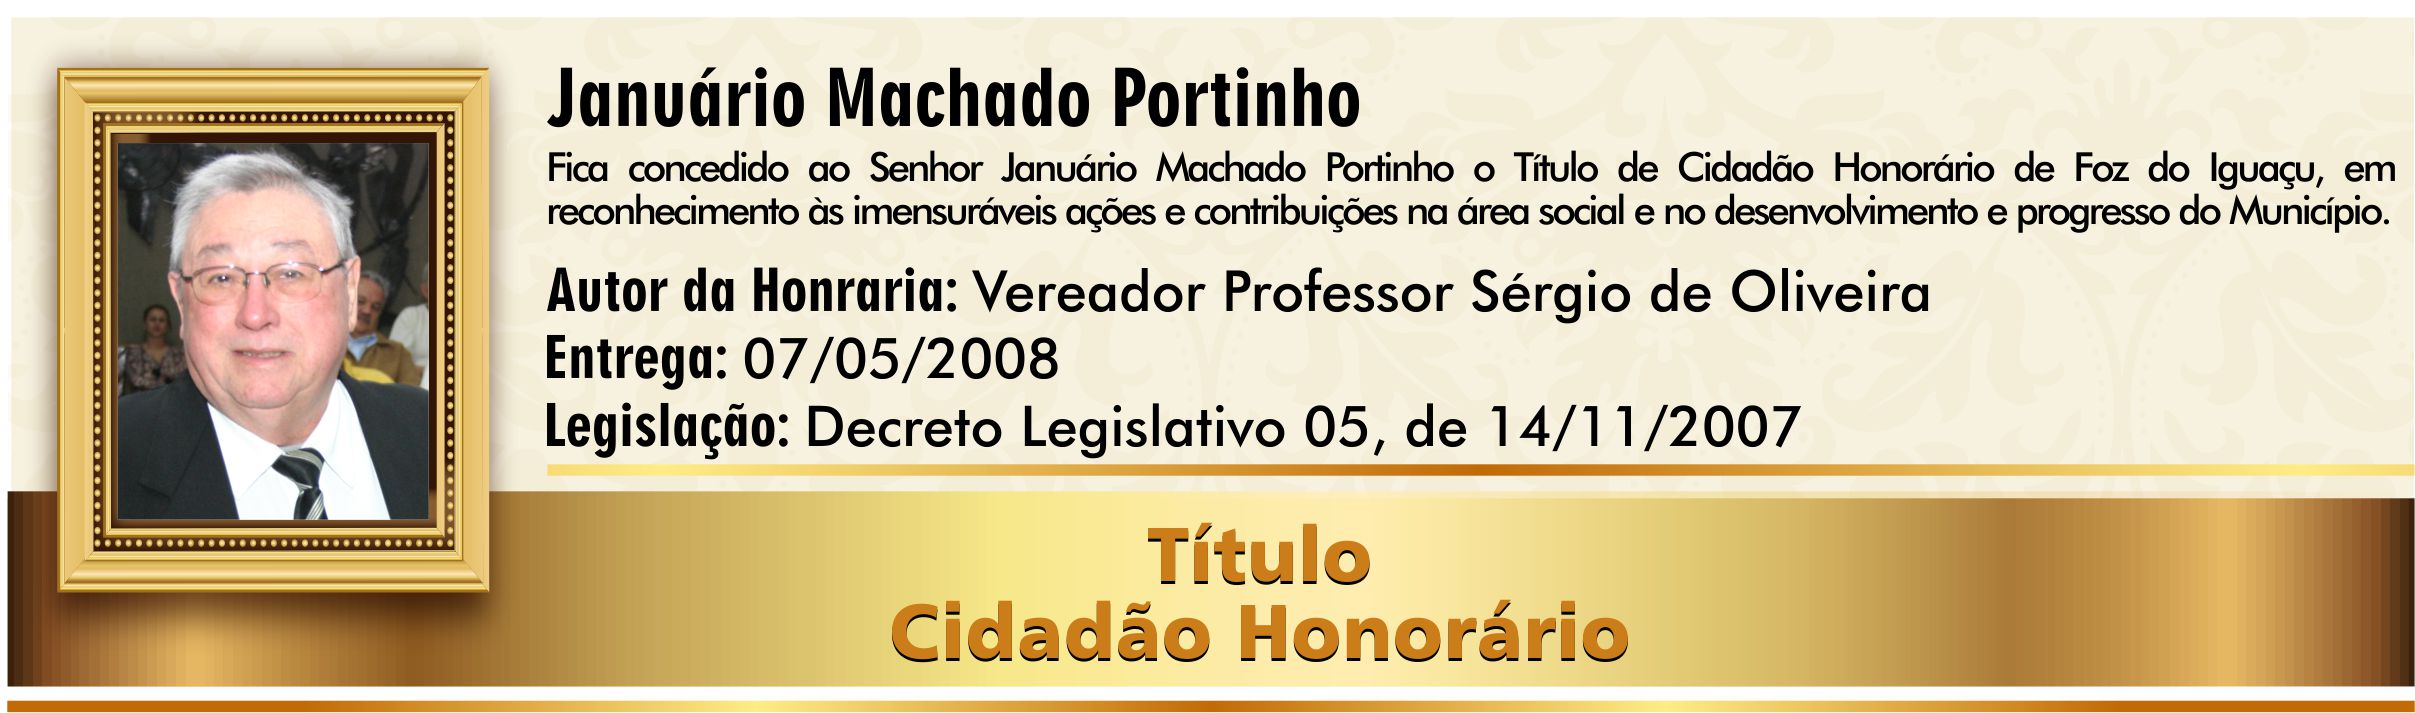 Januário Machado Portinho